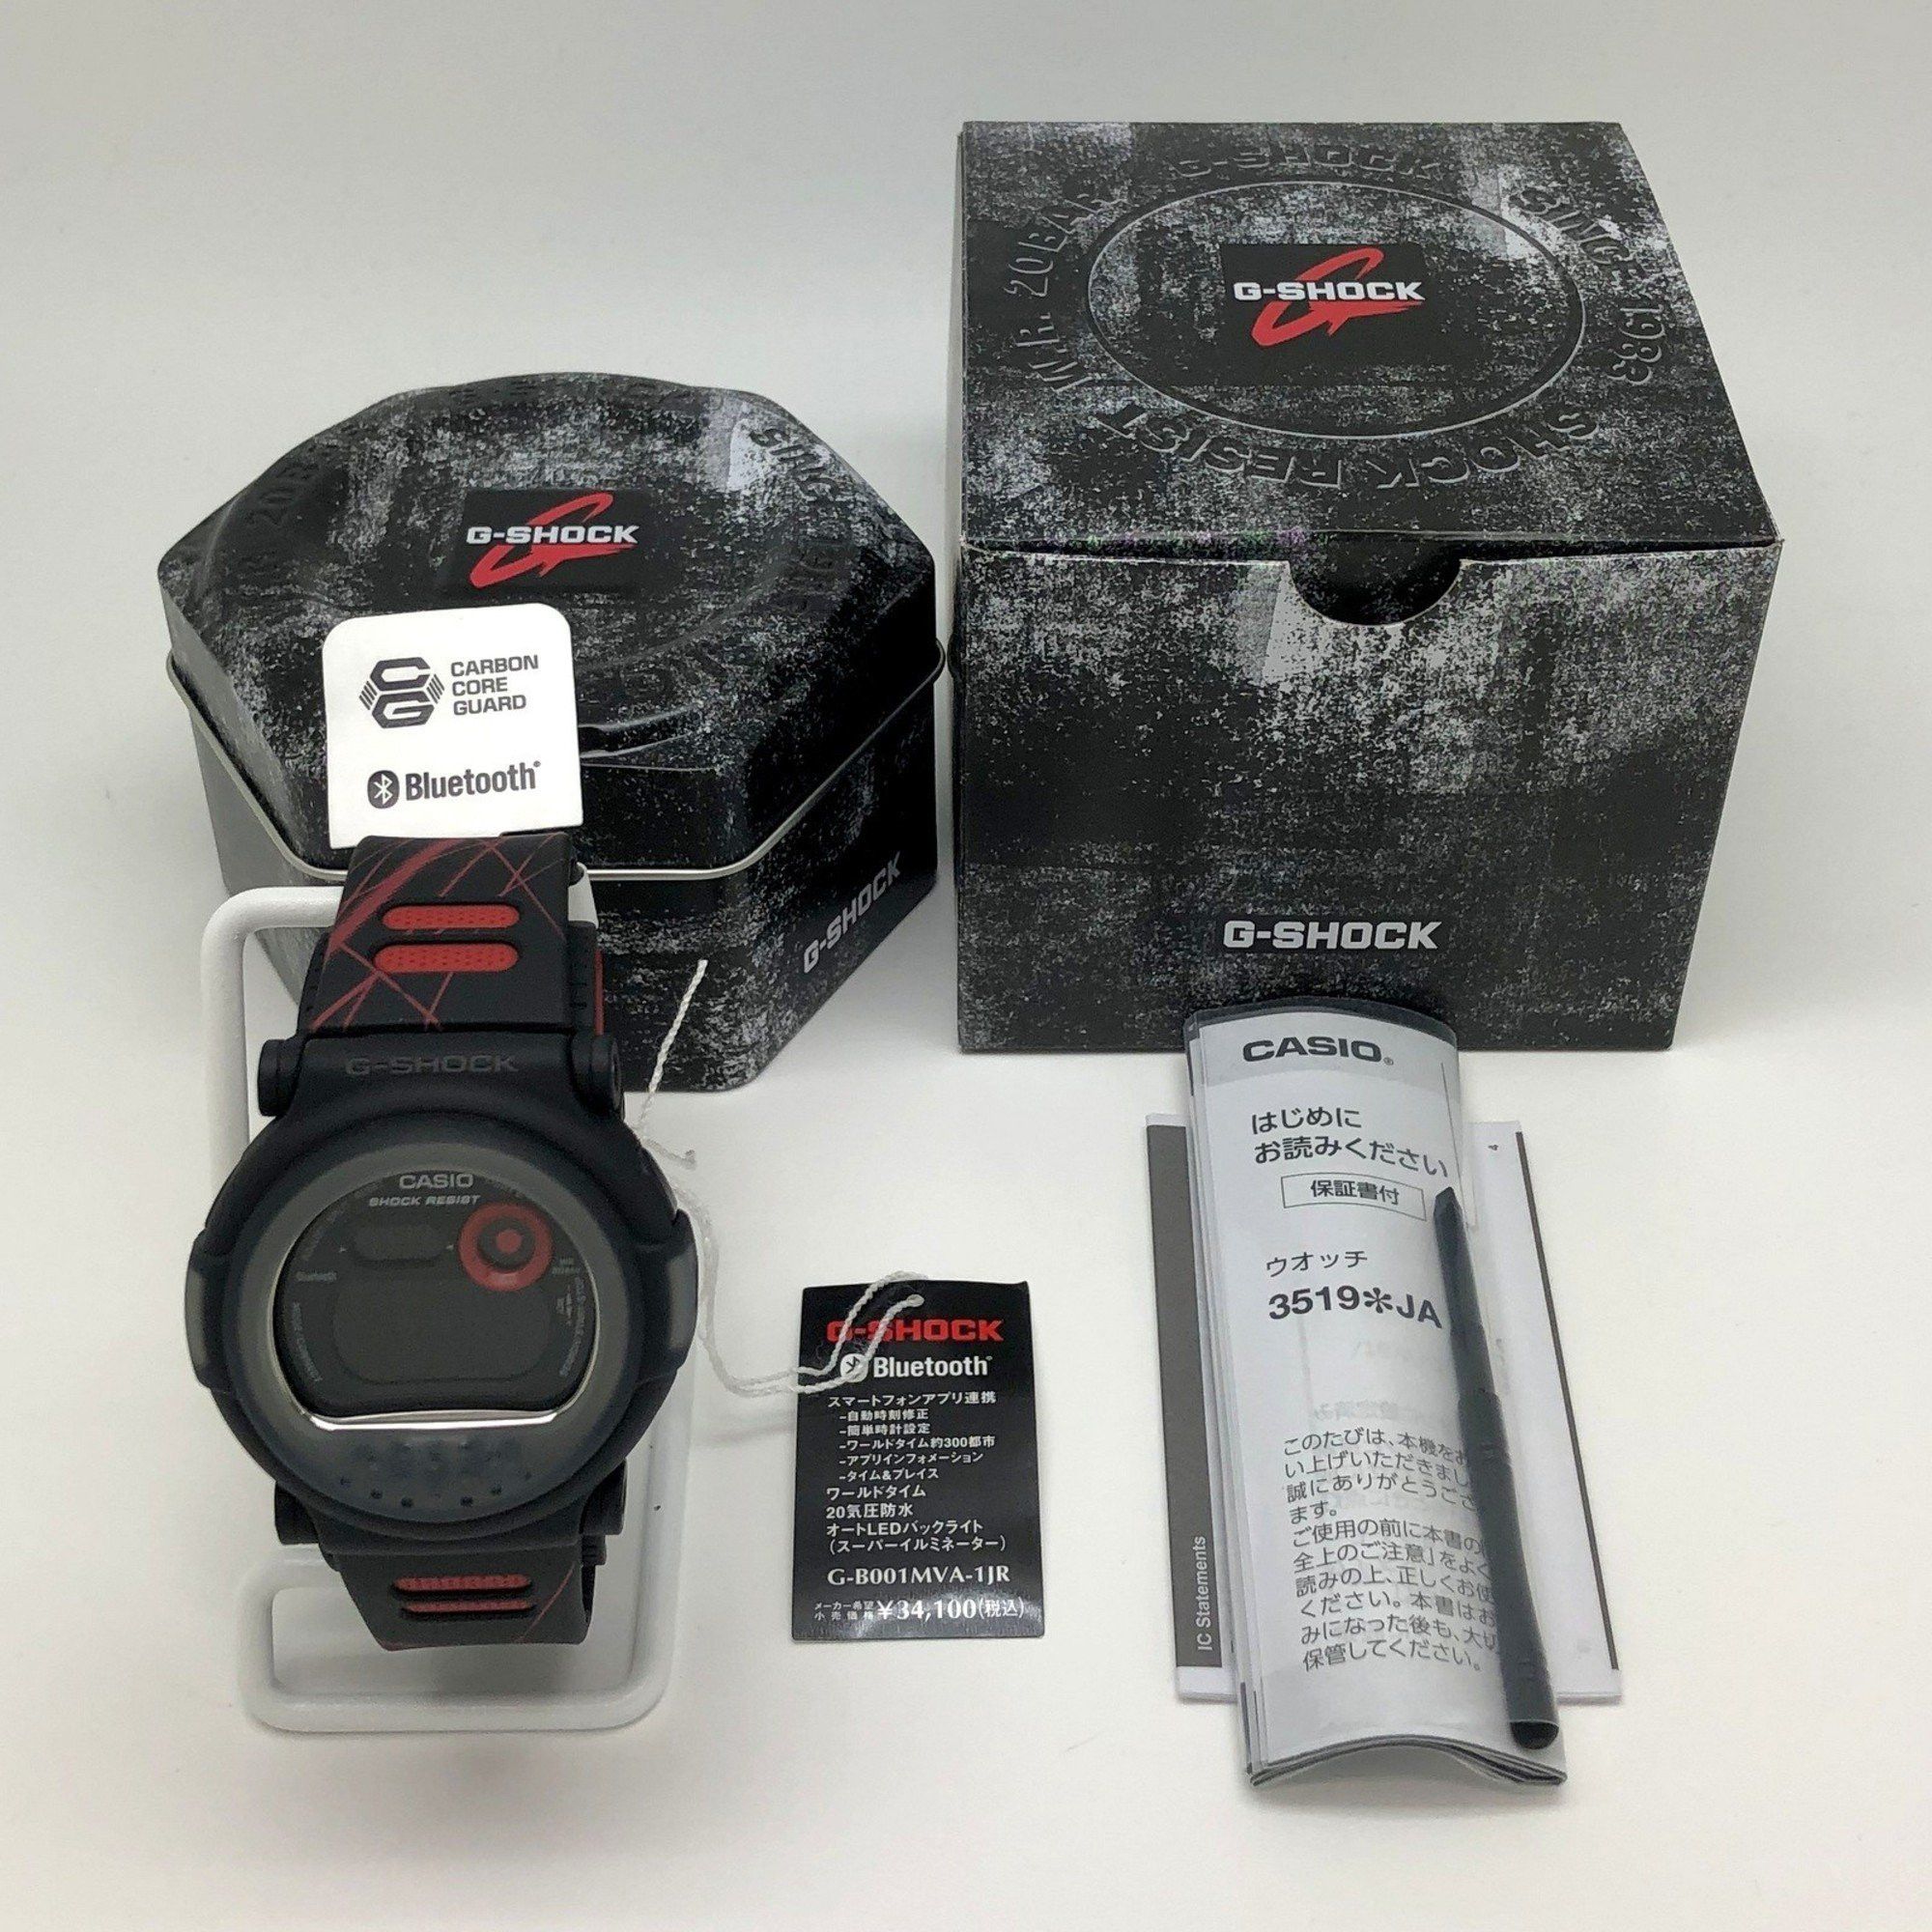 Casio G-SHOCK CASIO Watch G-B001MVA-1 Jason nexax Black Red Metal Bezel  DW-001 Series Digital Quartz Mikunigaoka Store IT4AXRKGE83L | Grailed